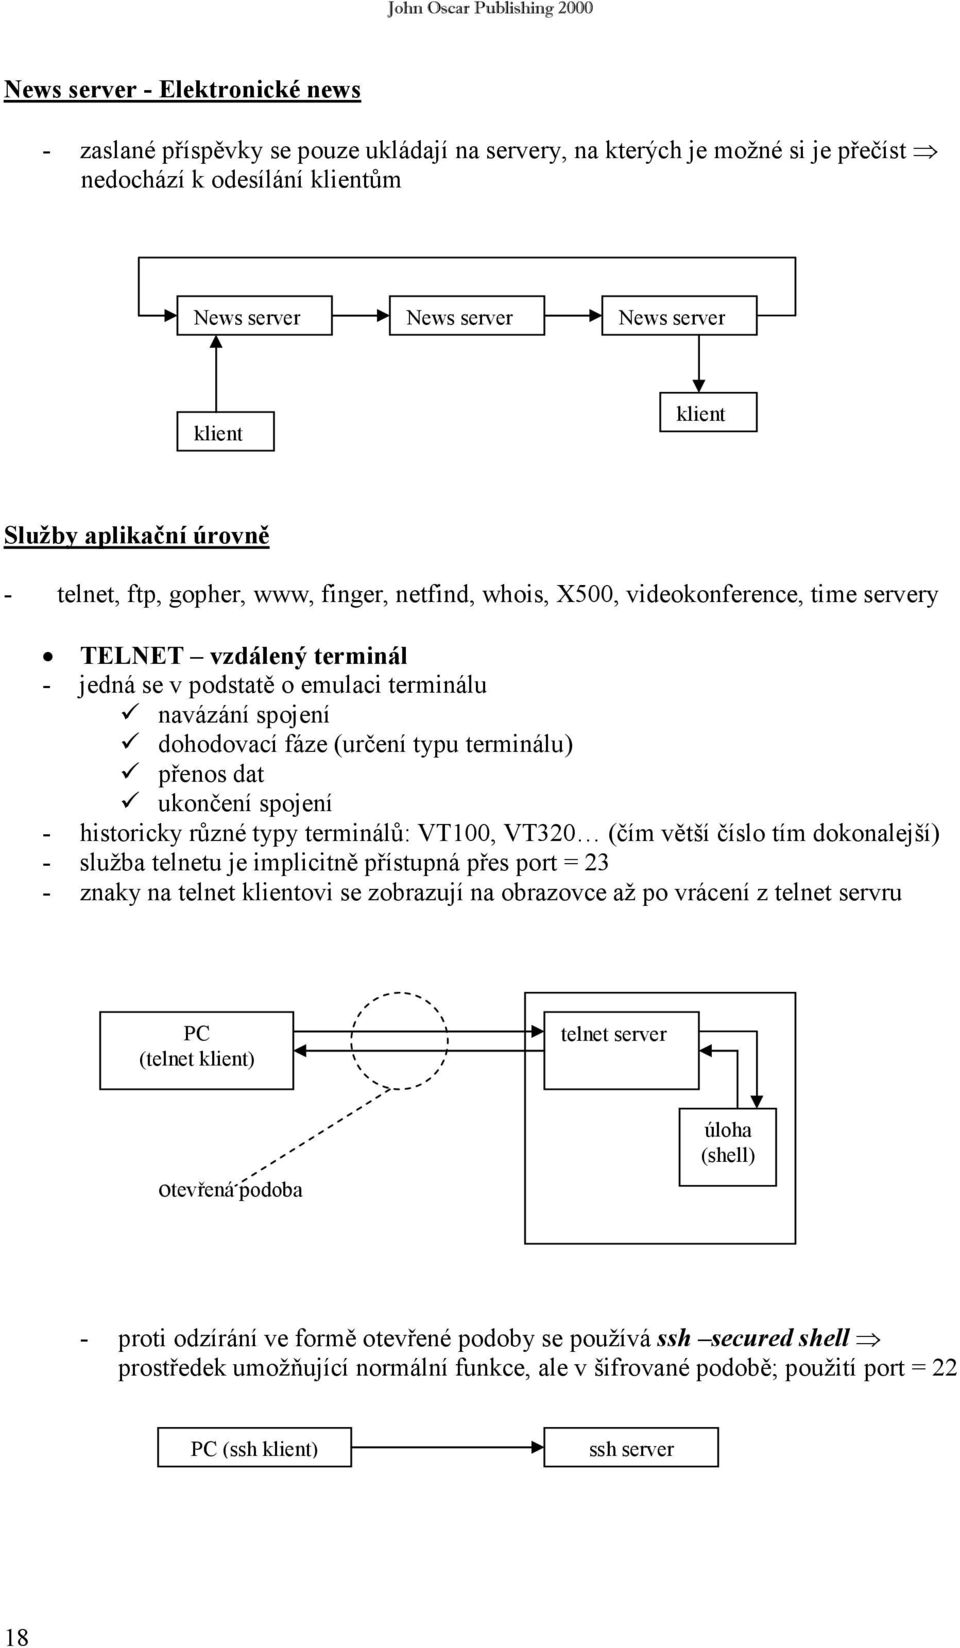 dohodovací fáze (určení typu terminálu) přenos dat ukončení spojení - historicky různé typy terminálů: VT100, VT320 (čím větší číslo tím dokonalejší) - služba telnetu je implicitně přístupná přes